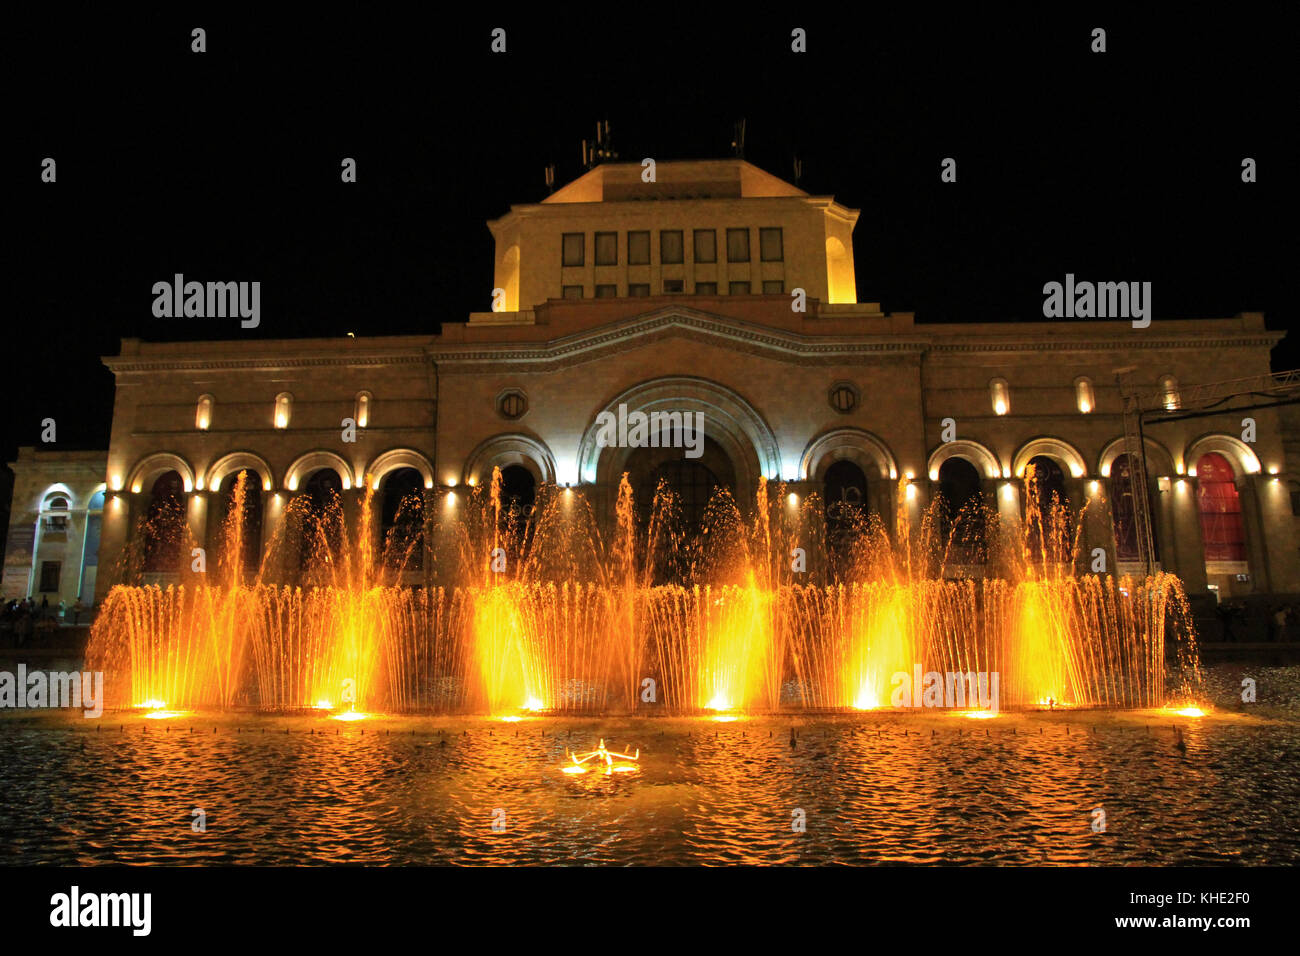 History Museum of Armenia, National Gallery of Armenia, Republic Square, Yerevan, Armenia Stock Photo